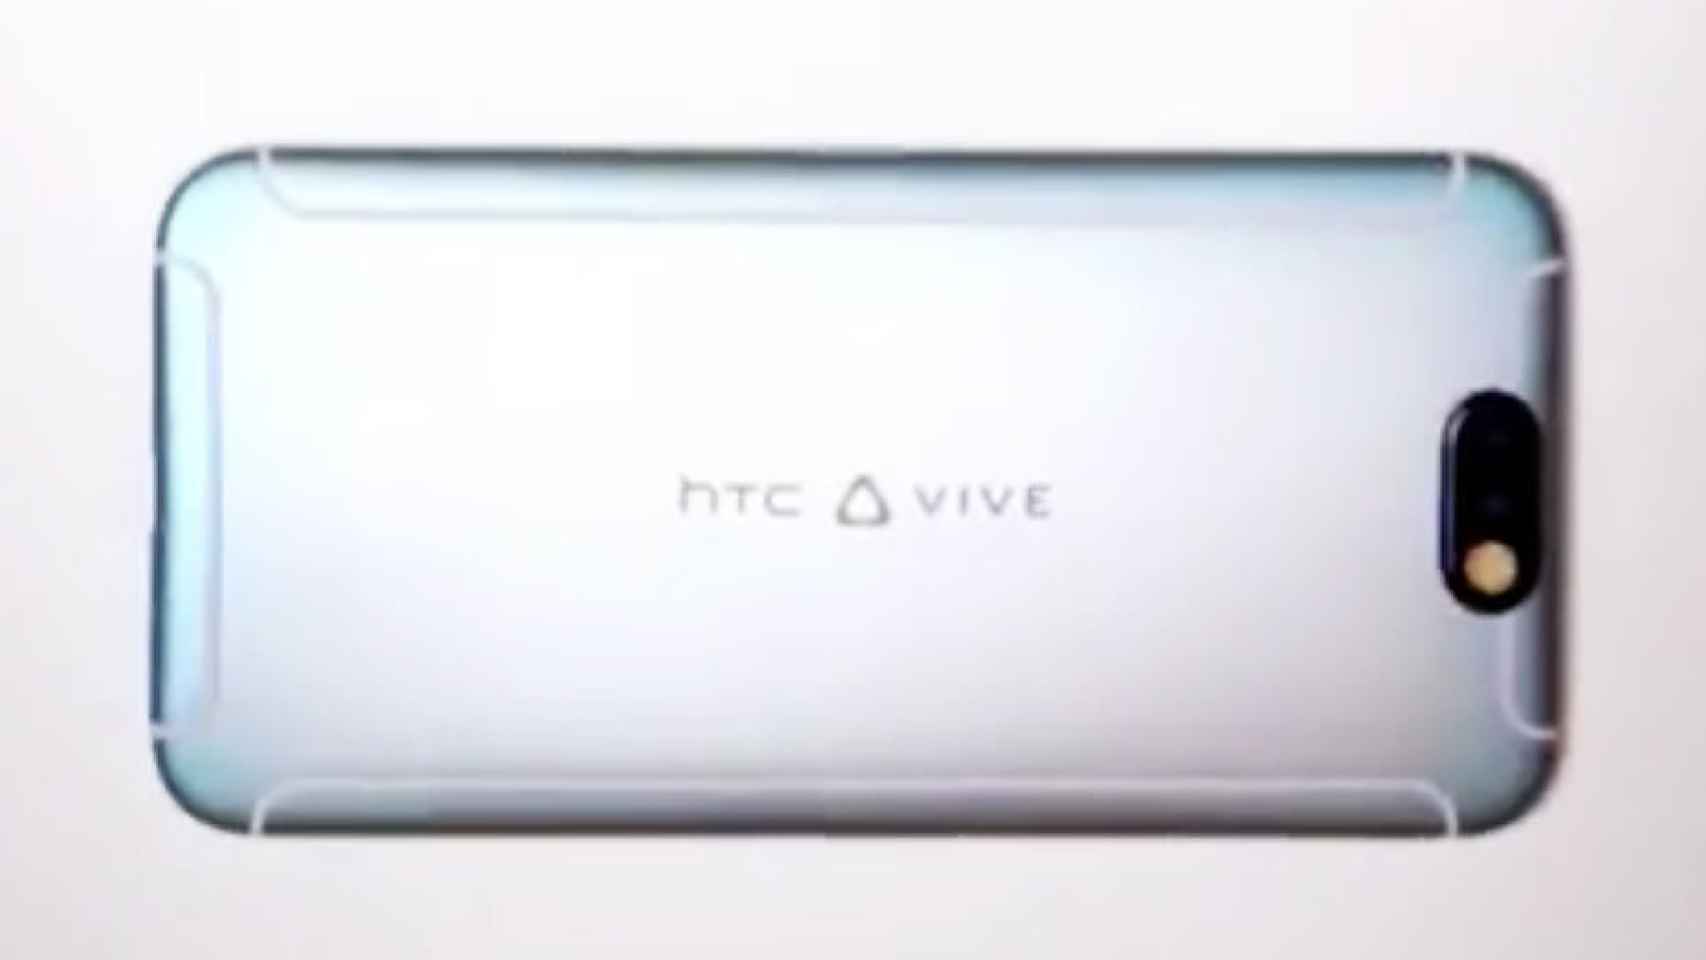 Lo nuevo de HTC será un móvil con VIVE